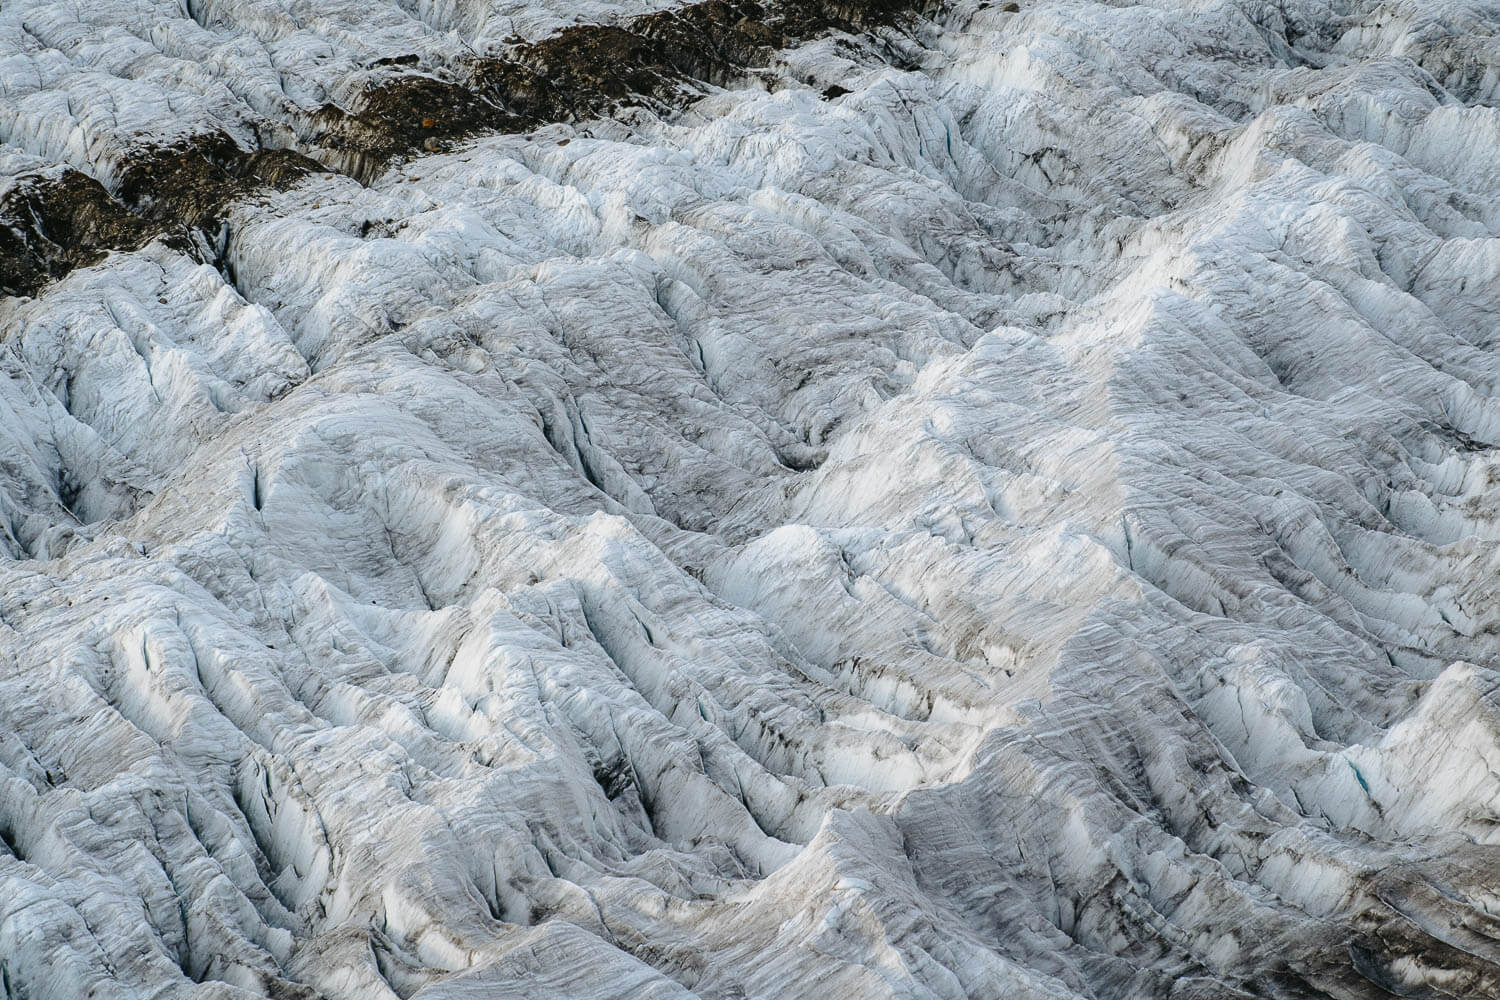 Details of the glacier